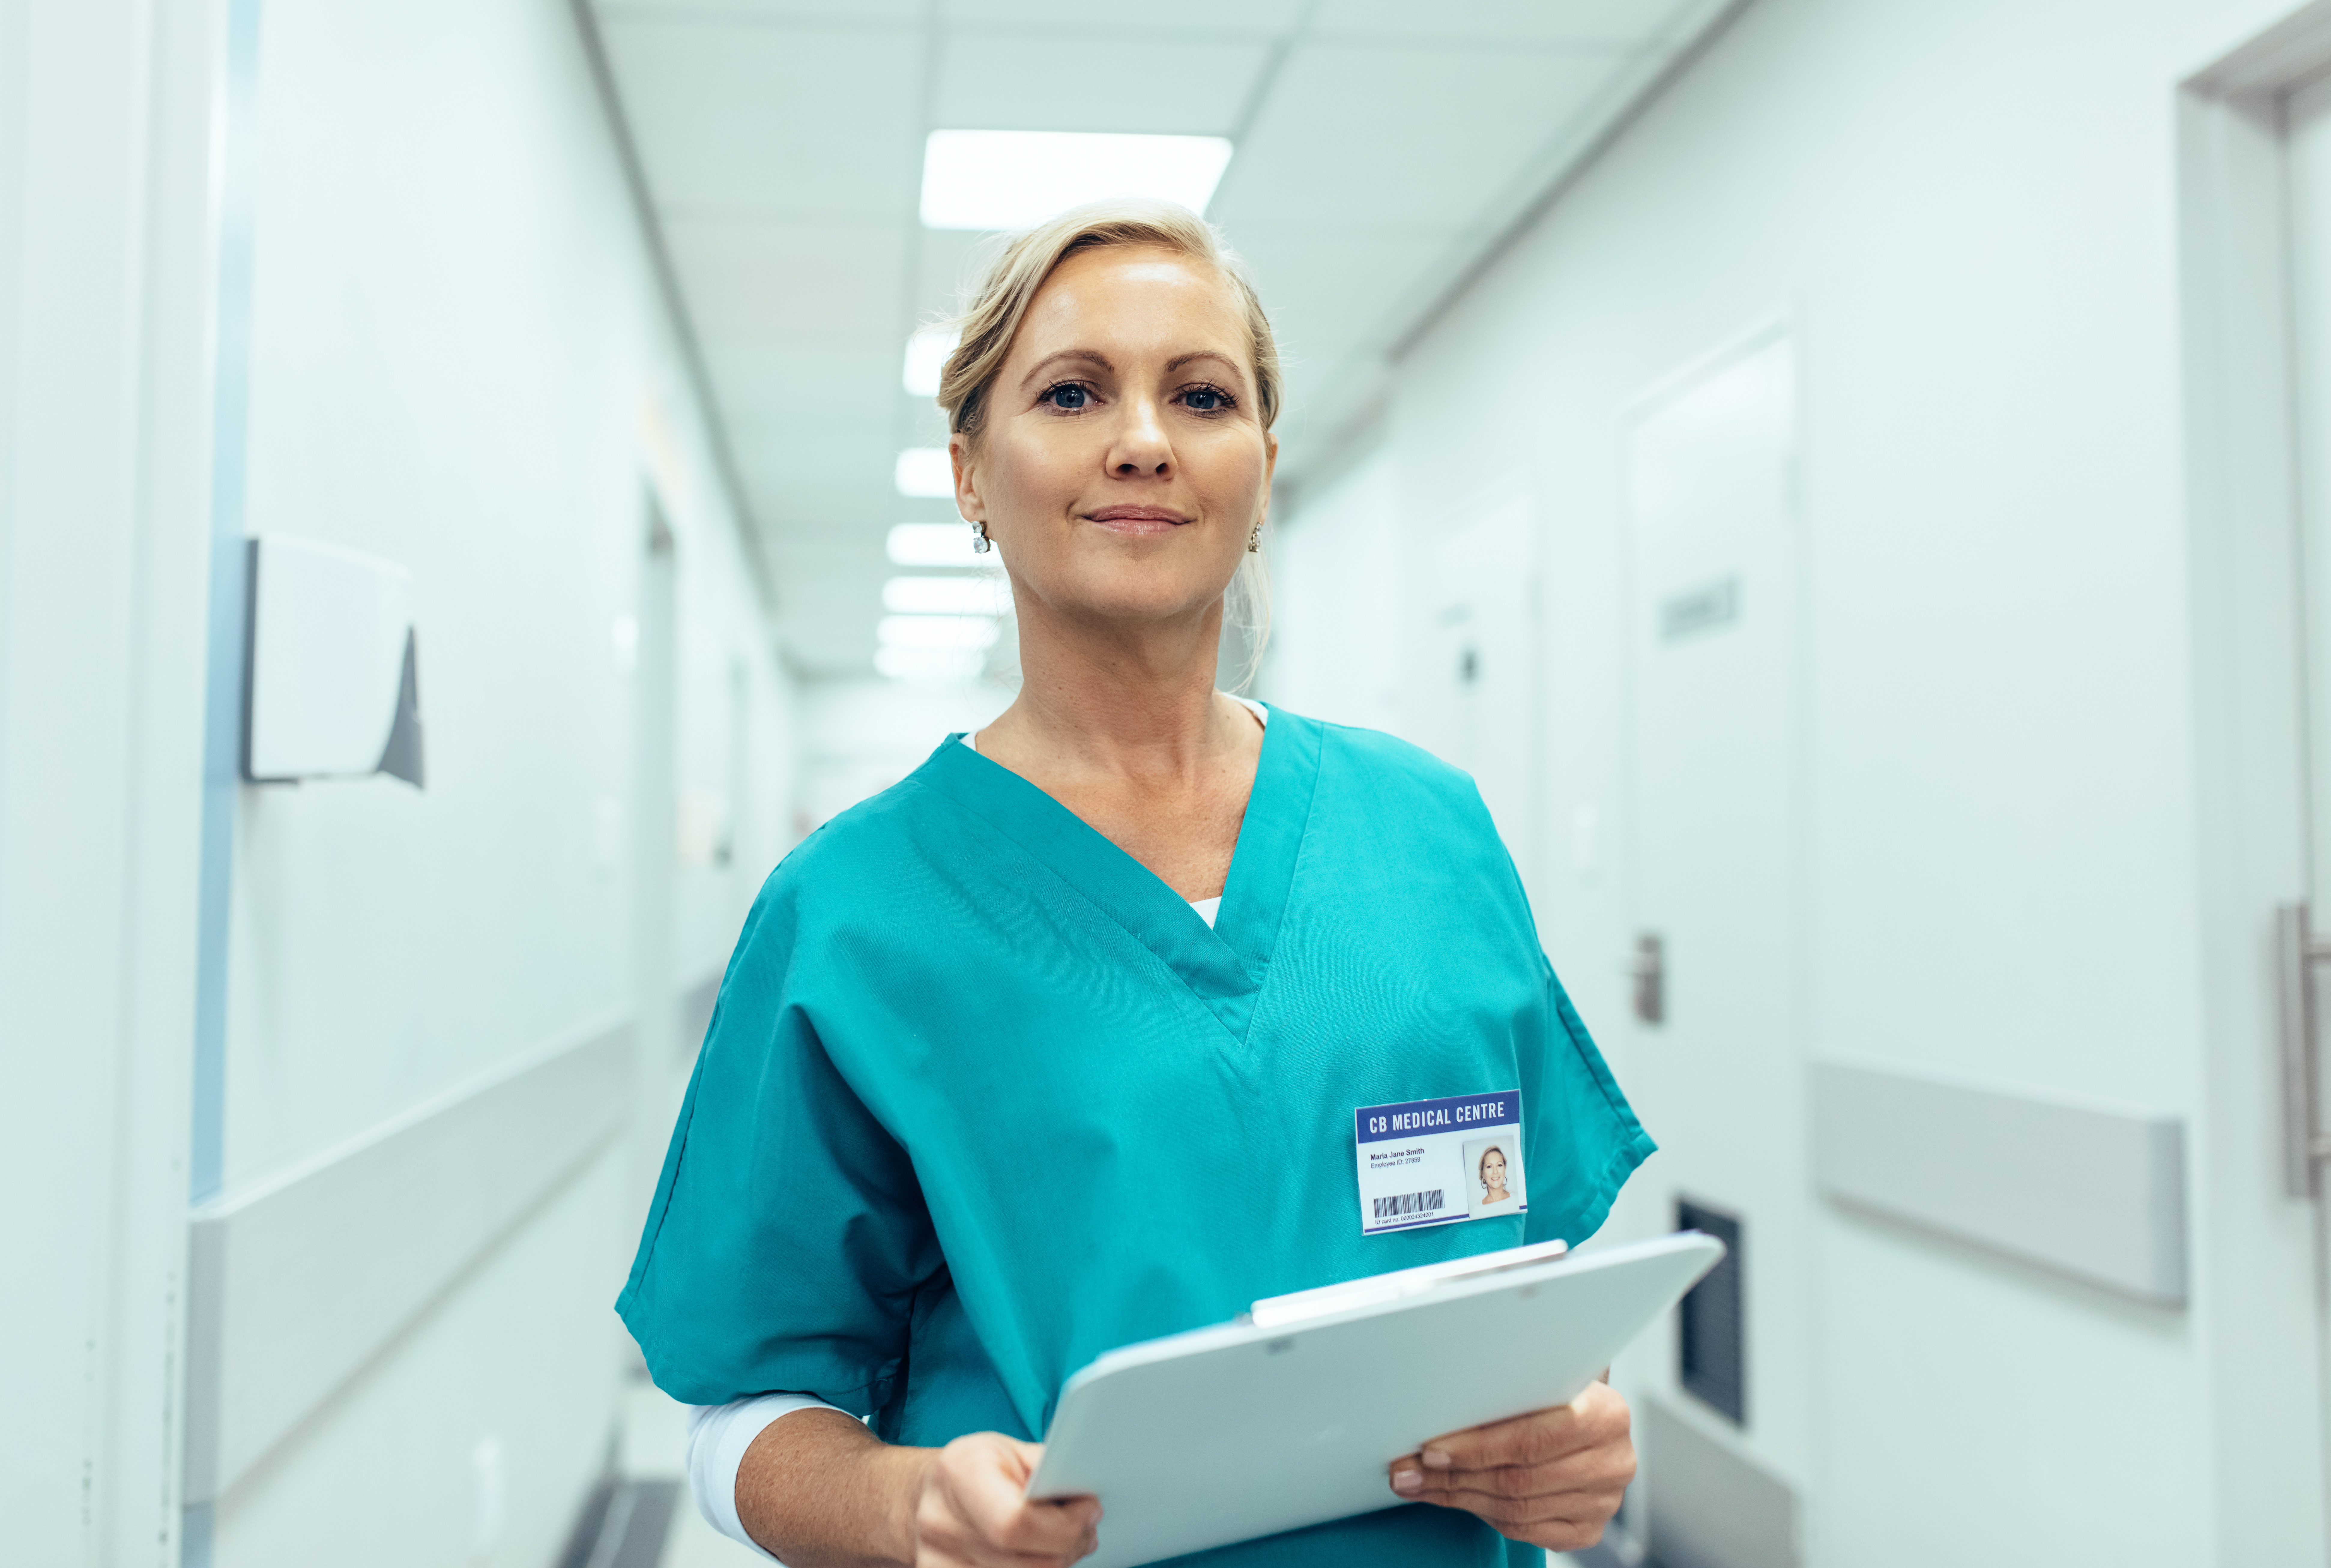 A nurse holding a clip board